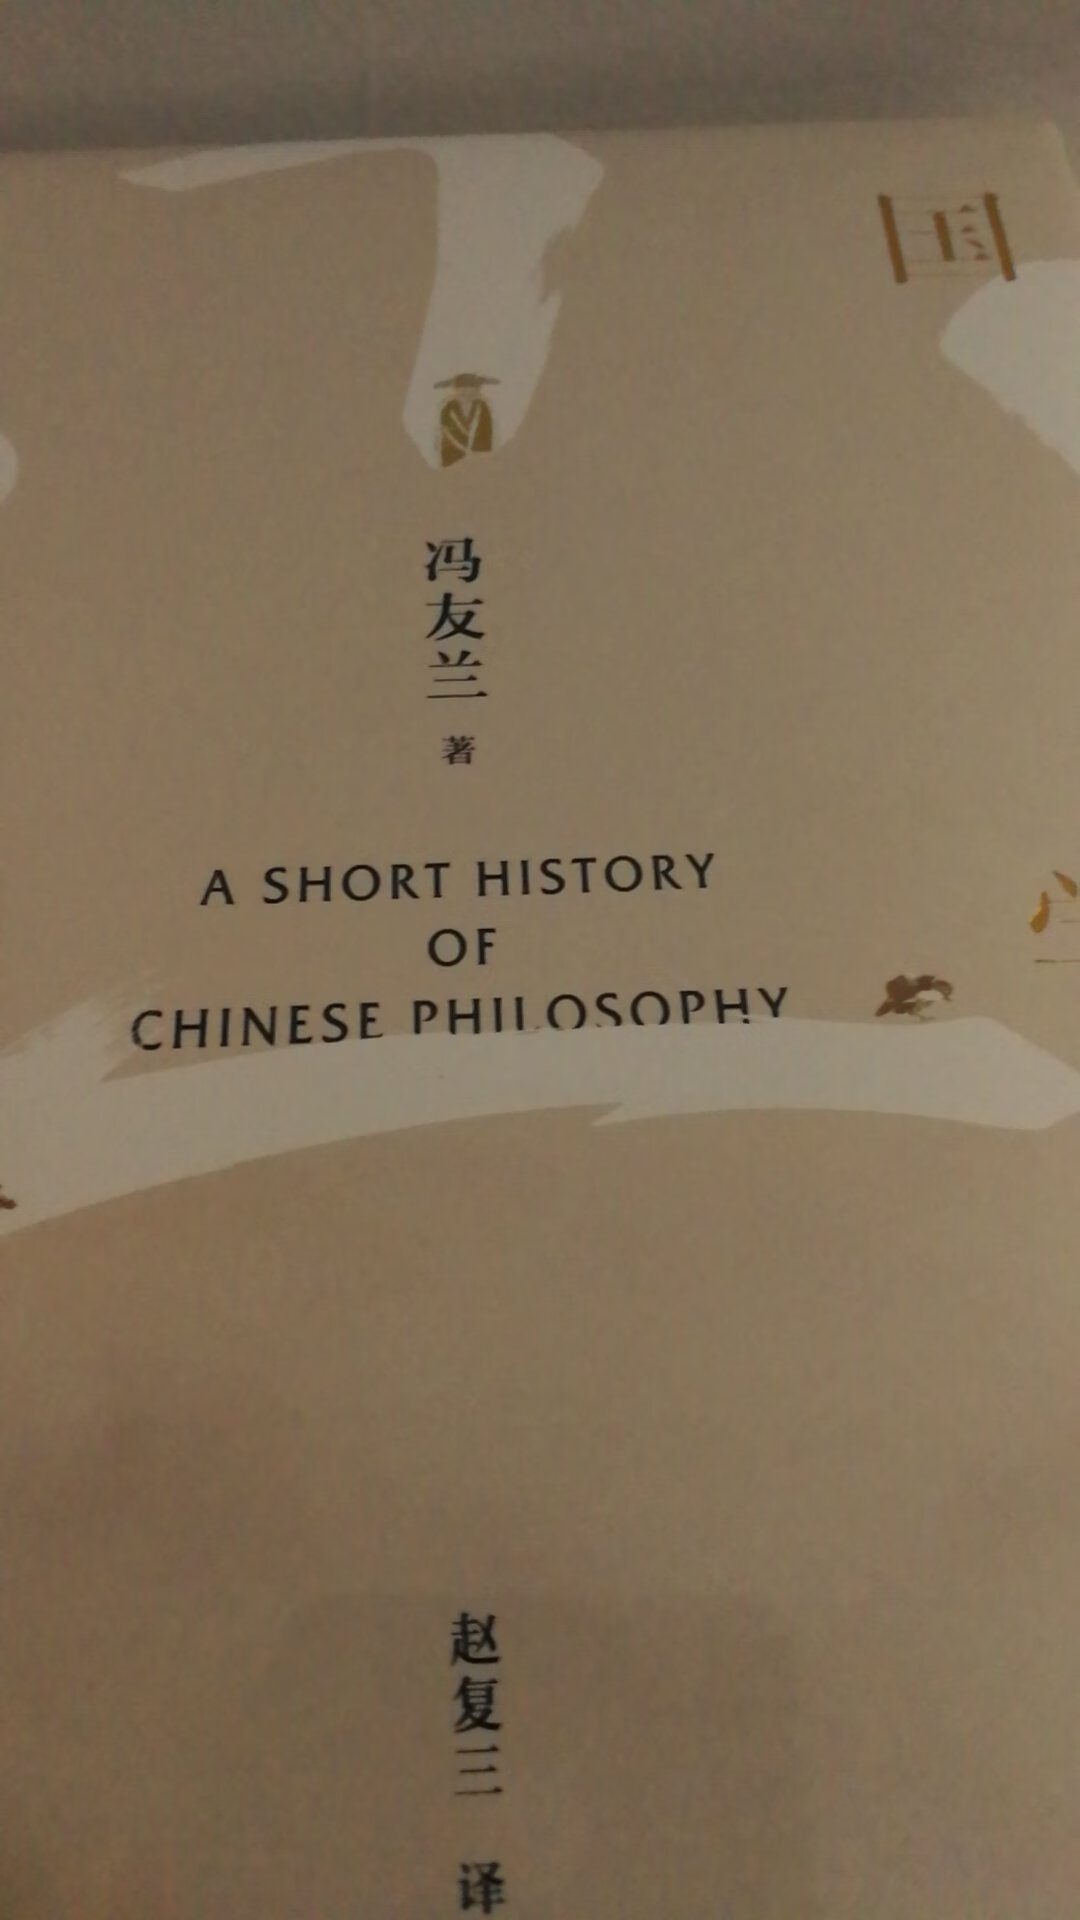 冯友兰老先生的著作，普及版，值得称赞和收藏！